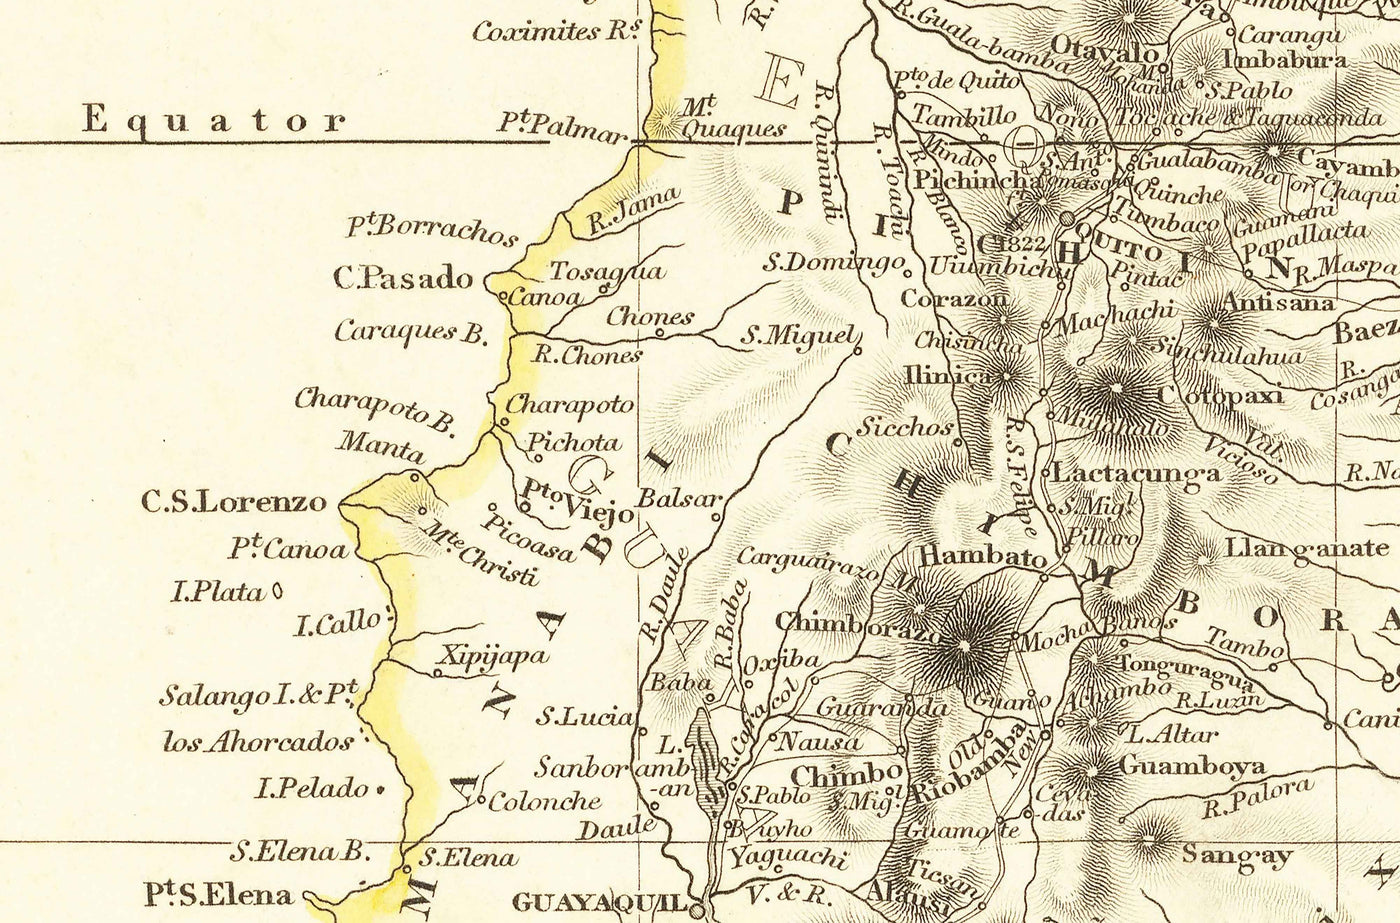 Alte Karte von Kolumbien, 1834 von Arrowsmith - Großkolumbien, Venezuela, Ecuador, Peru, Karibik, Panama